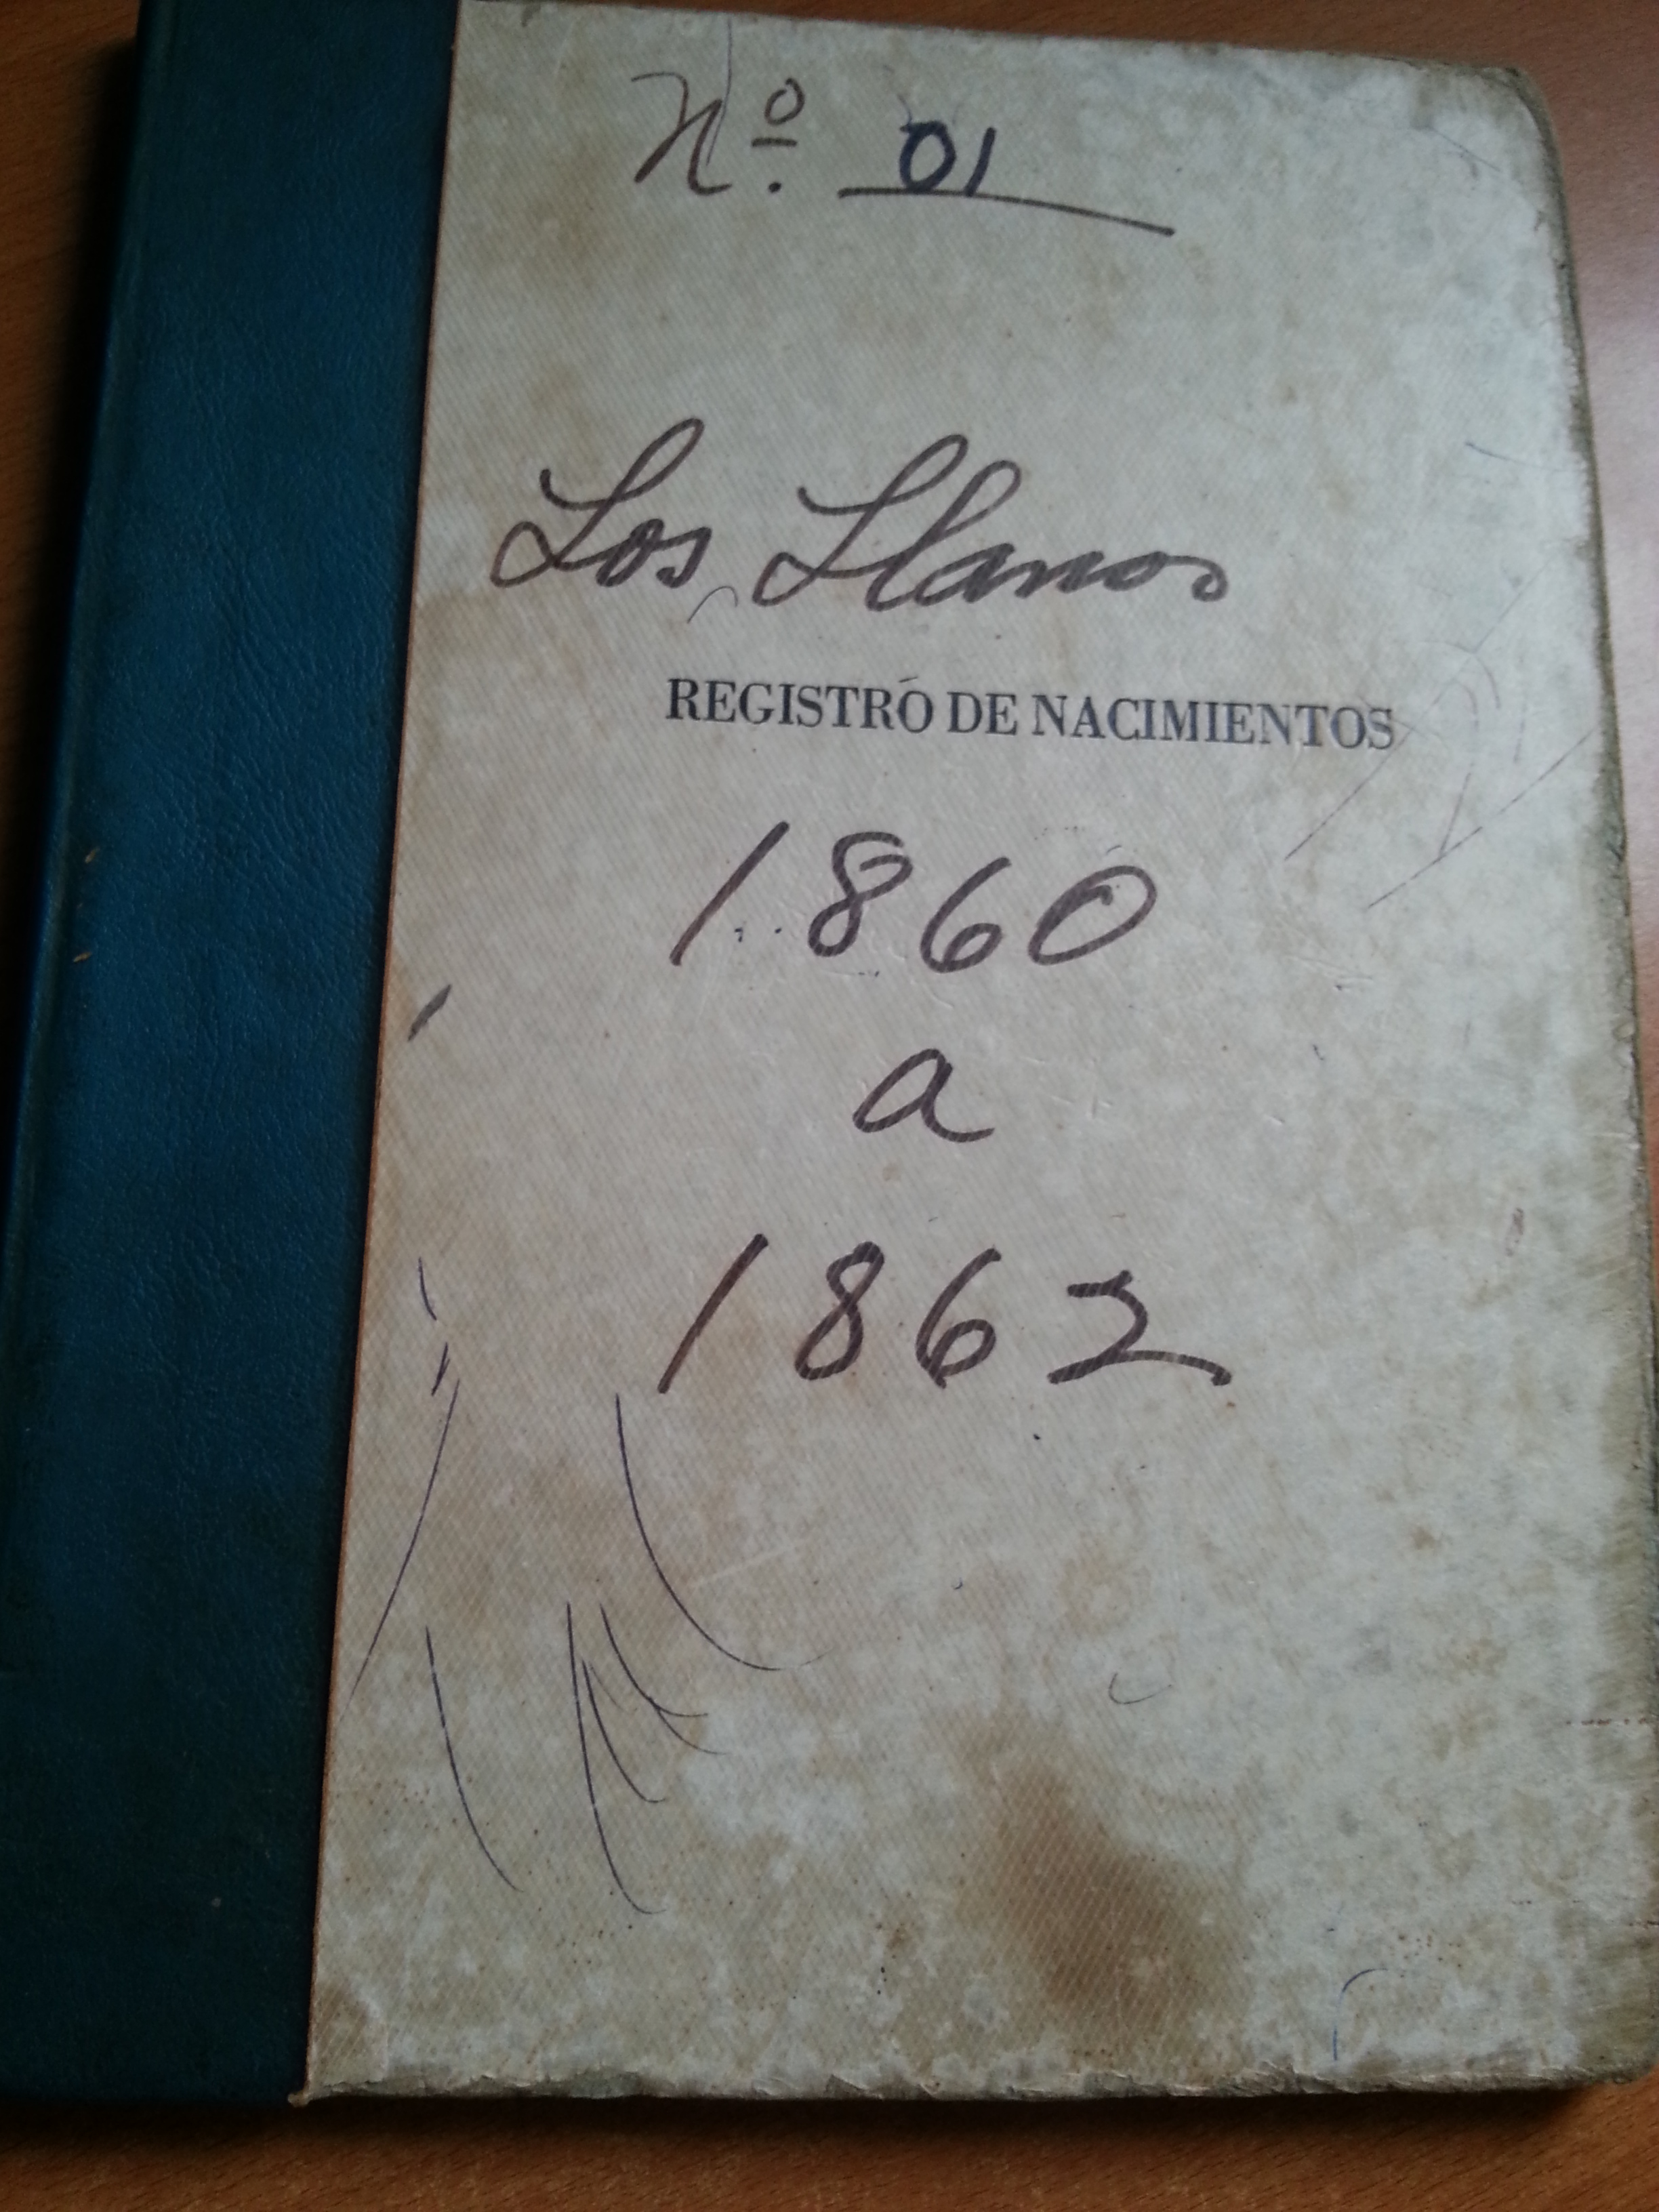 Un livre de naissance Dominicain restauré dans les années 1860